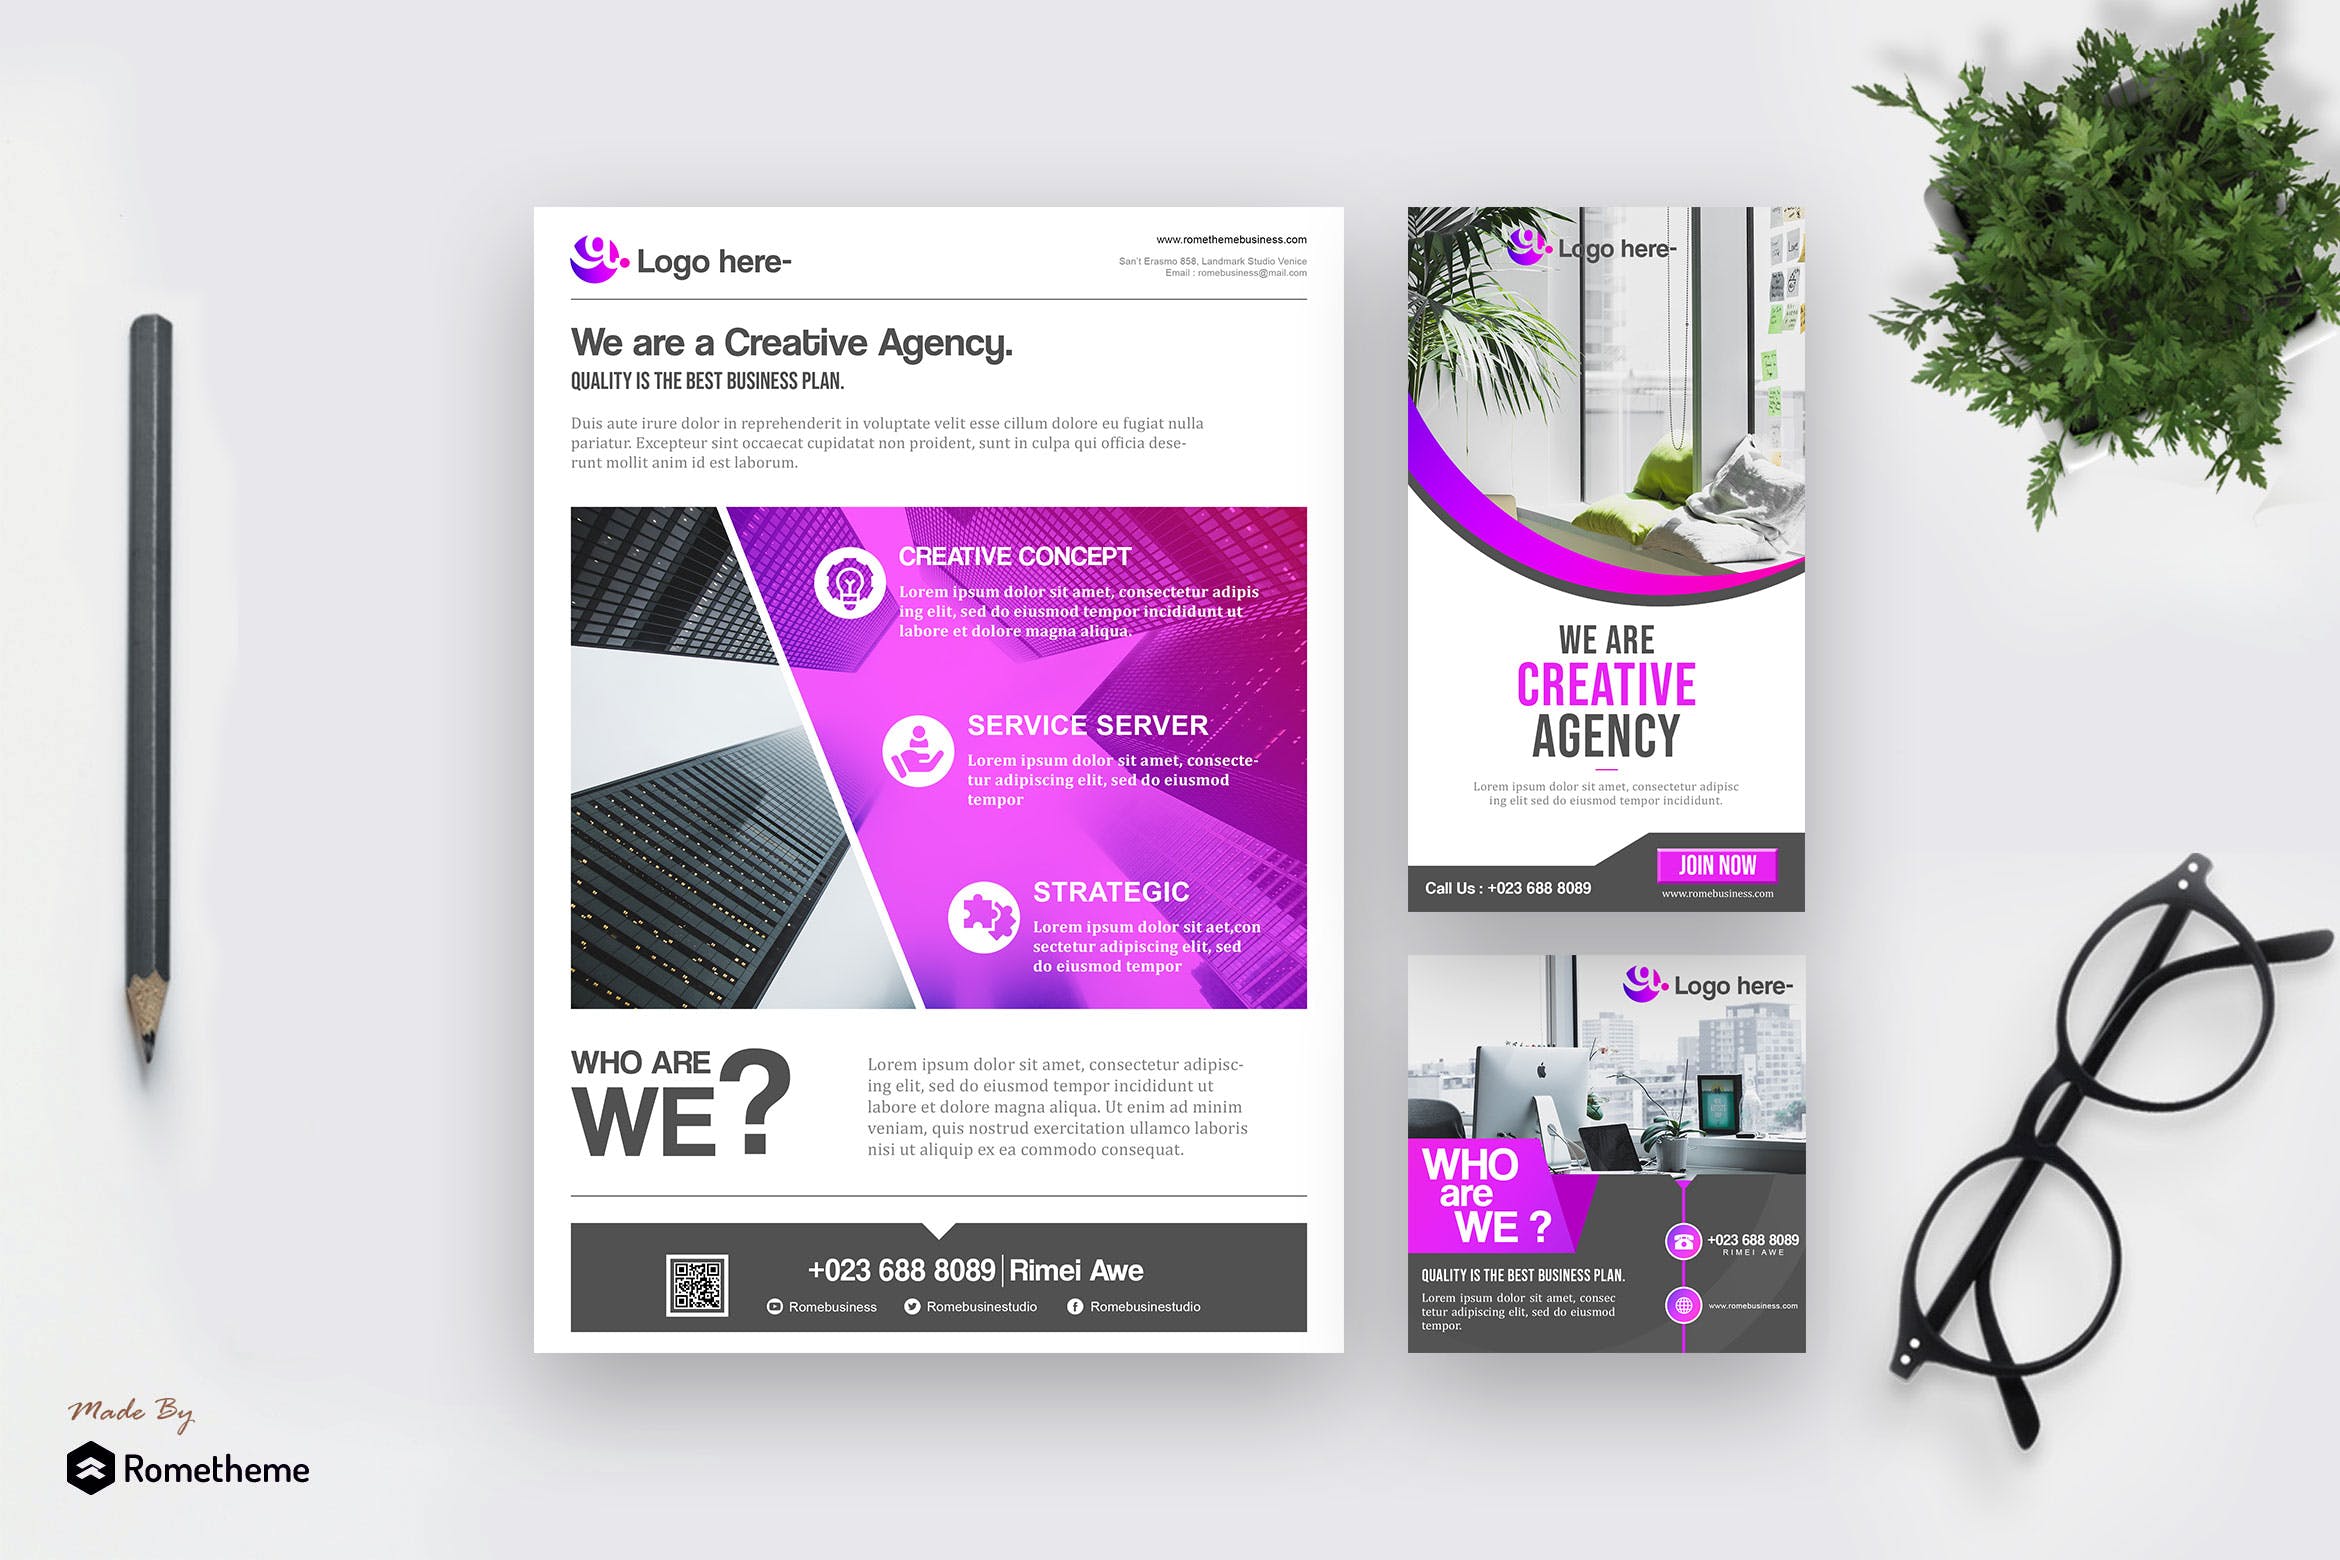 极简主义设计风格企业宣传广告设计素材 Business – Minimalist Template Pack插图